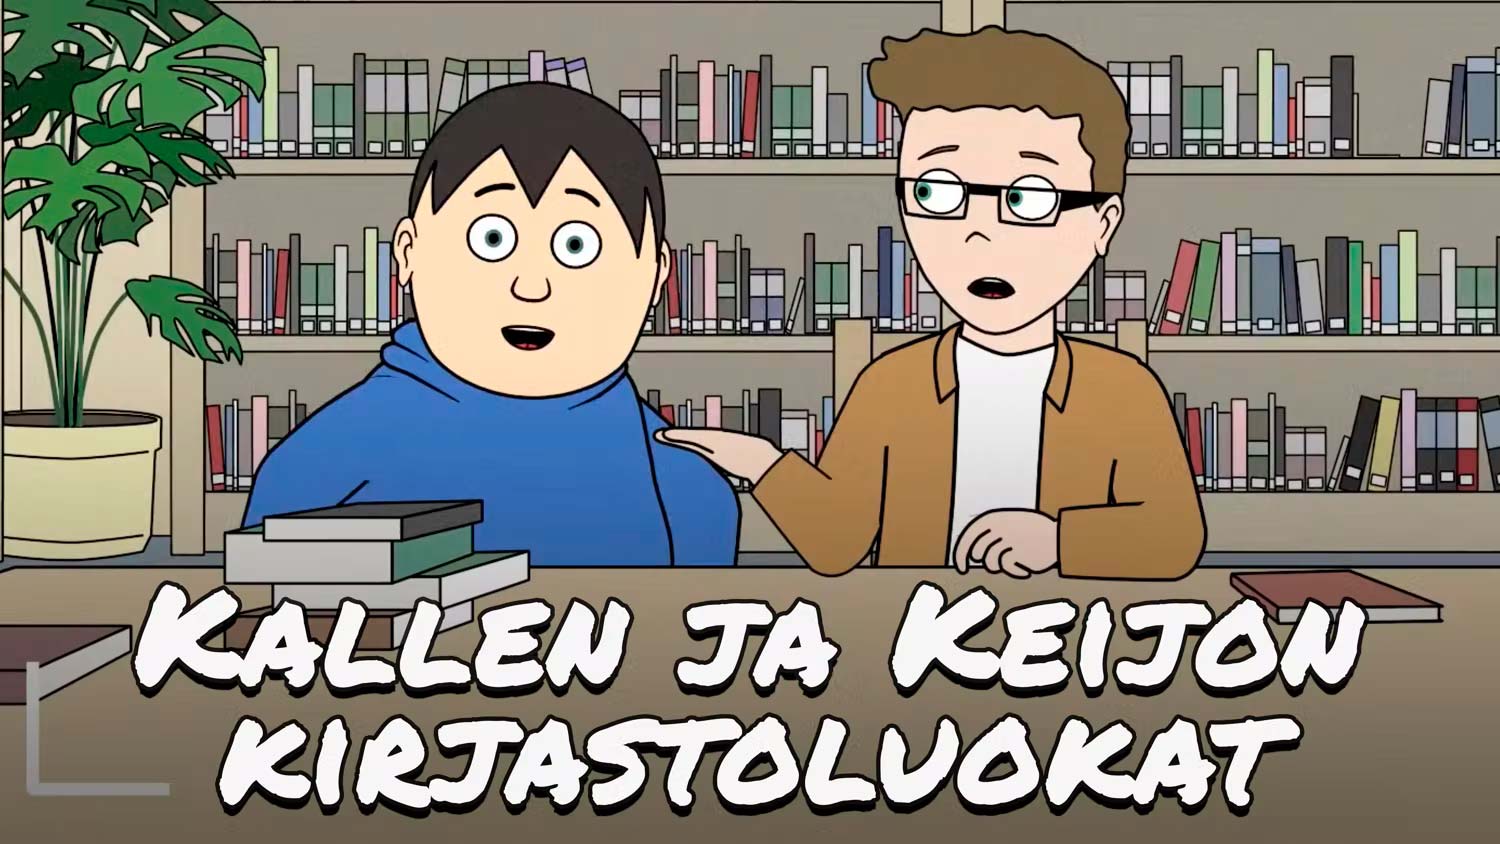 Kalles och Keijos biblioteksklasser, videon har svenska undertexter.